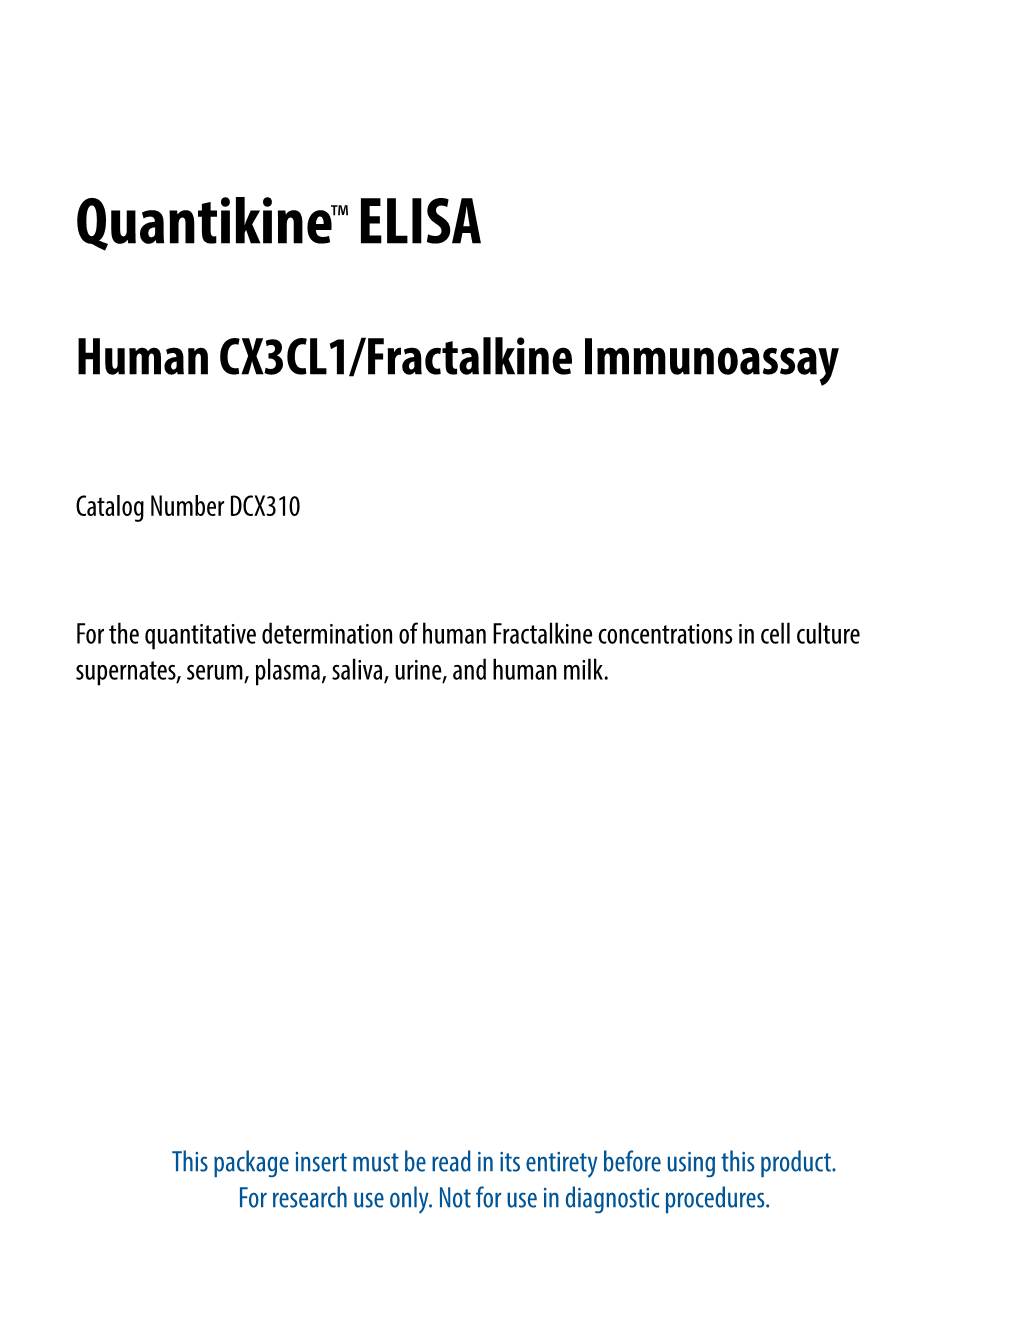 Human CX3CL1/Fractalkine Quantikine ELISA